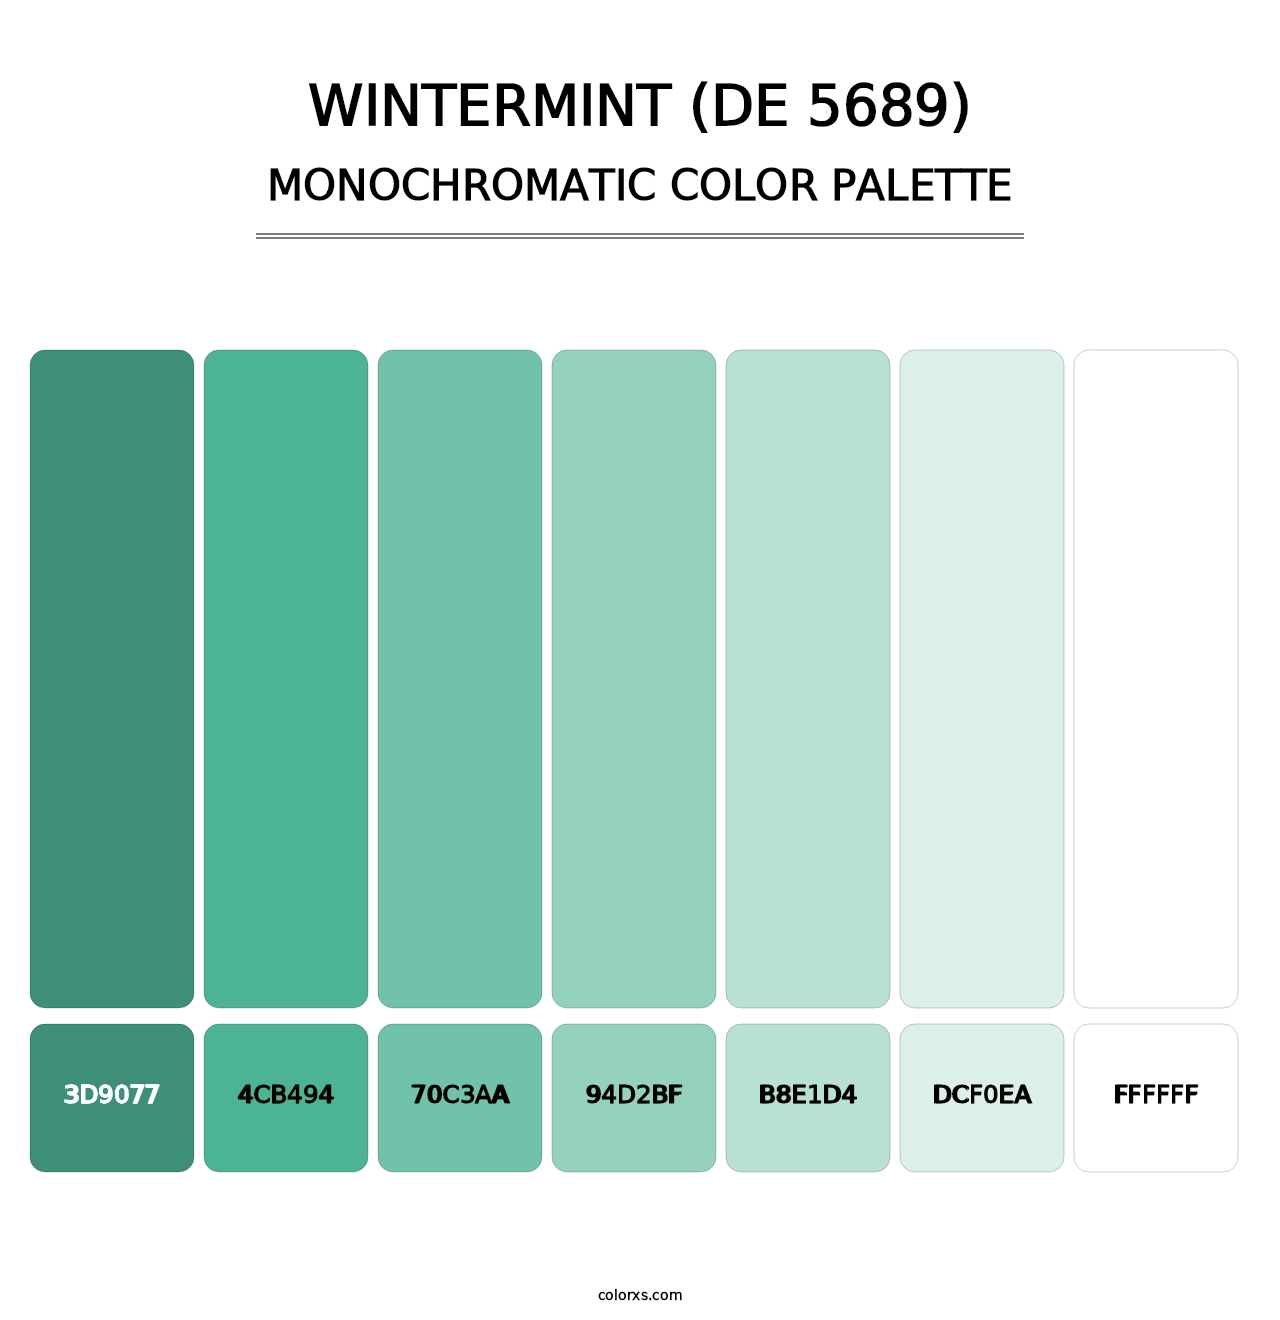 Wintermint (DE 5689) - Monochromatic Color Palette